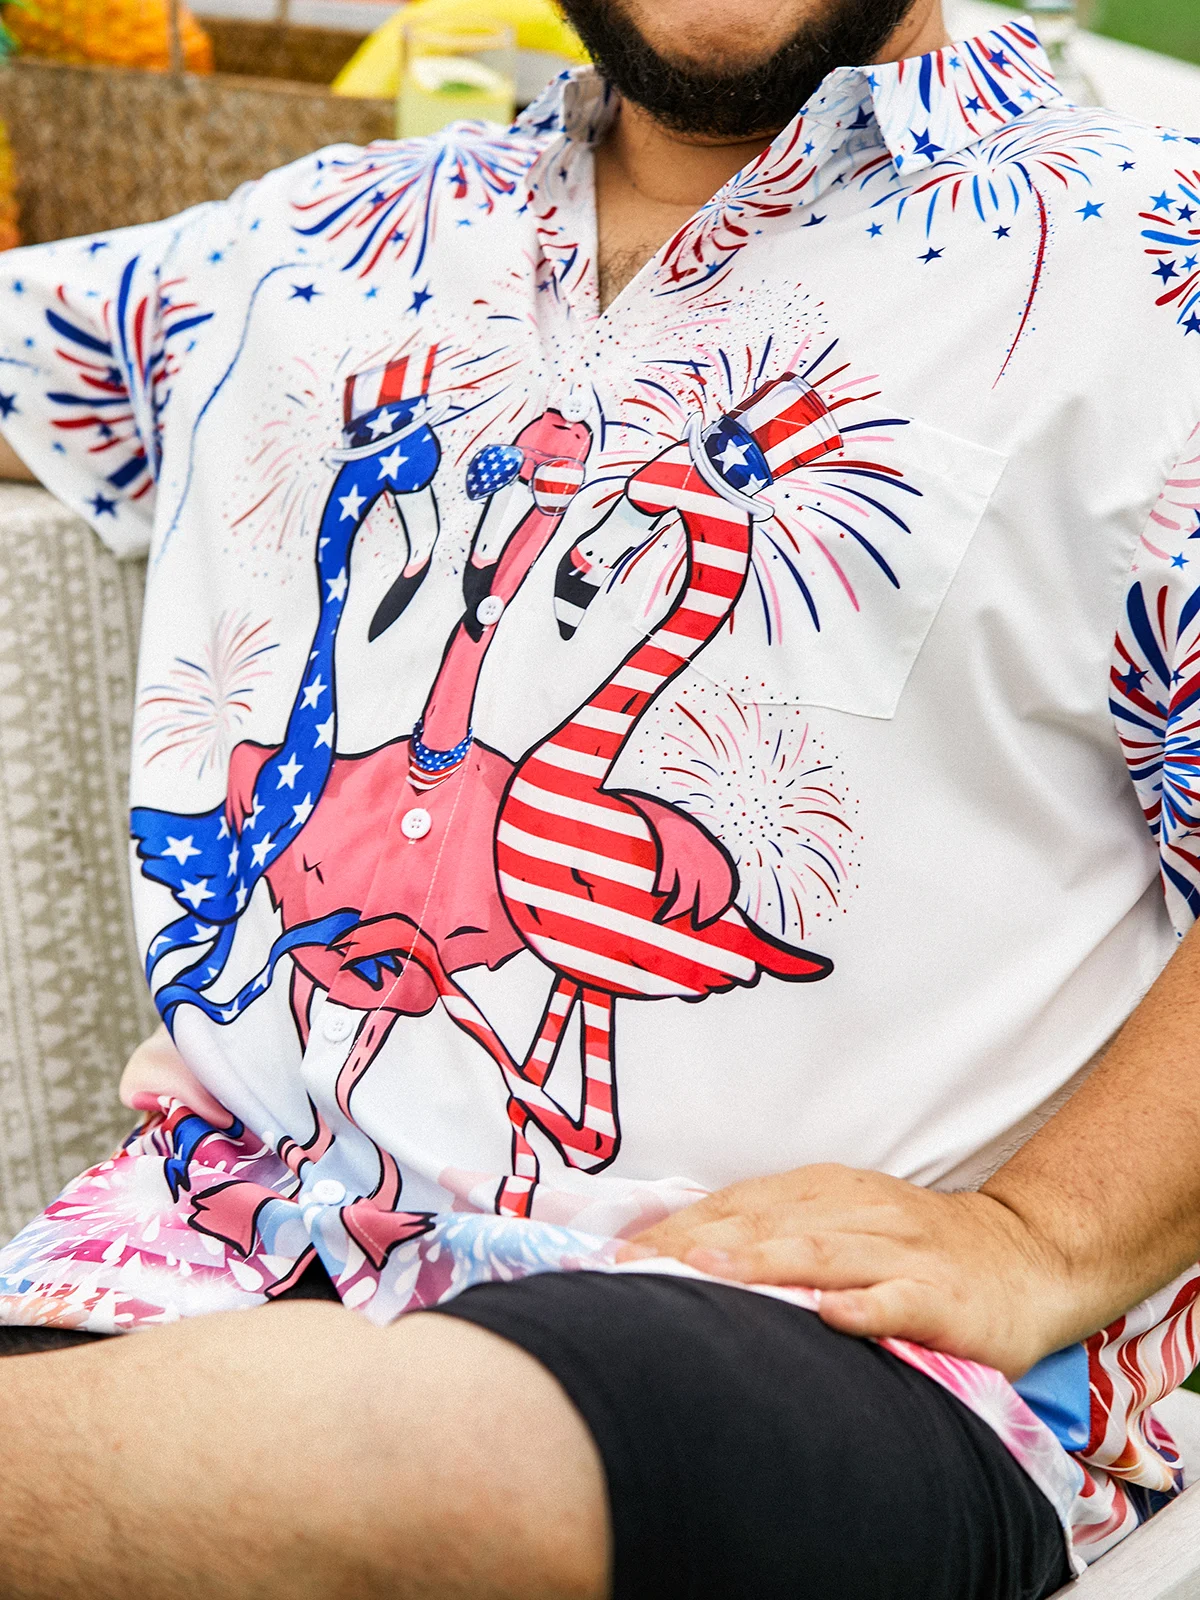 Hardaddy Indepndence Day Flag Flamingo Chest Pocket Short Sleeve Shirt